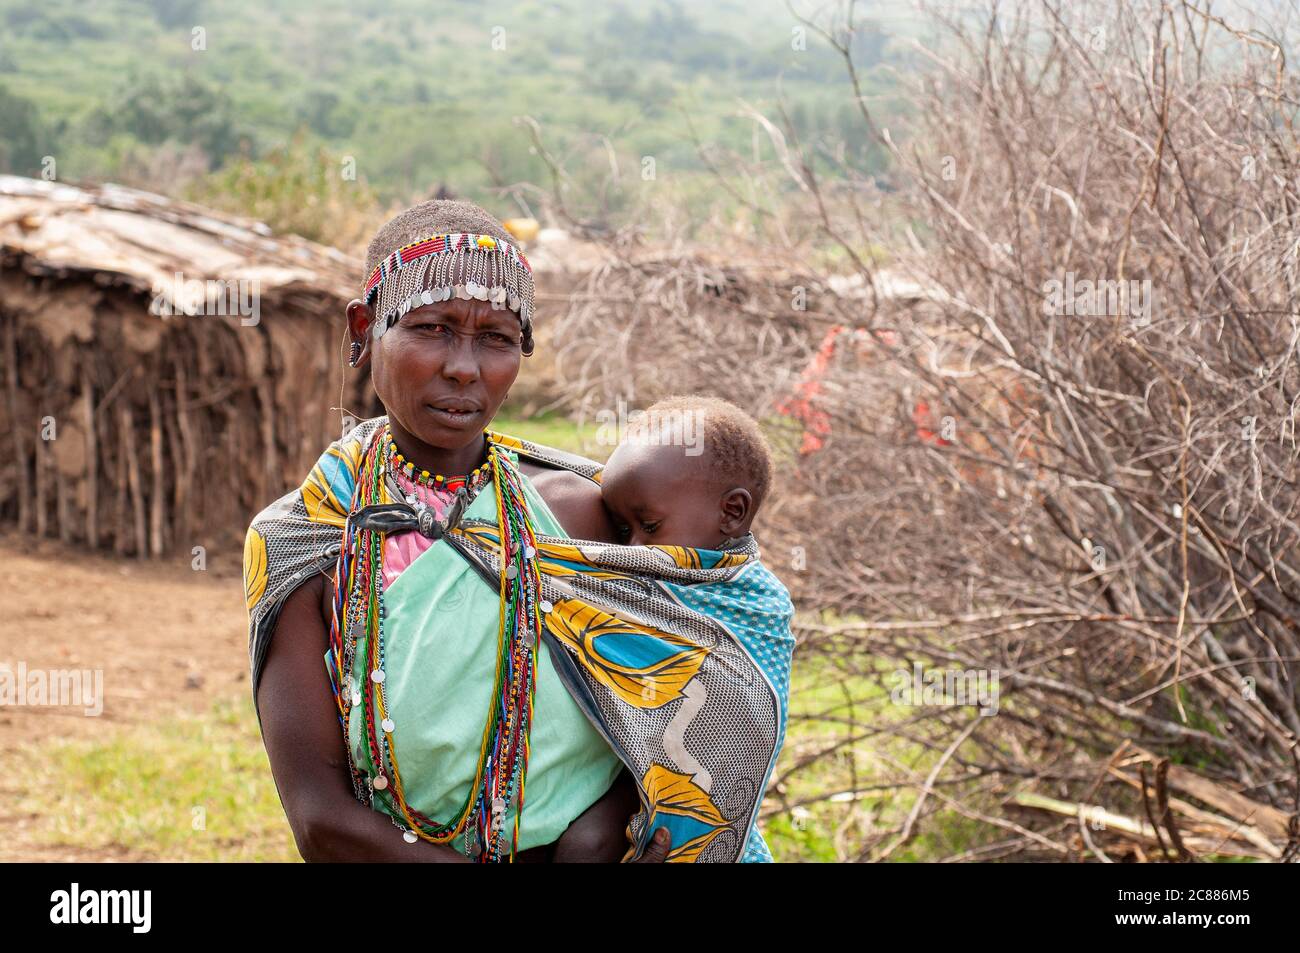 Maasai jeune mère et bébé, portant une tenue traditionnelle, dans un village de maasai. Réserve nationale de Maasai Mara. Kenya. Afrique. Banque D'Images